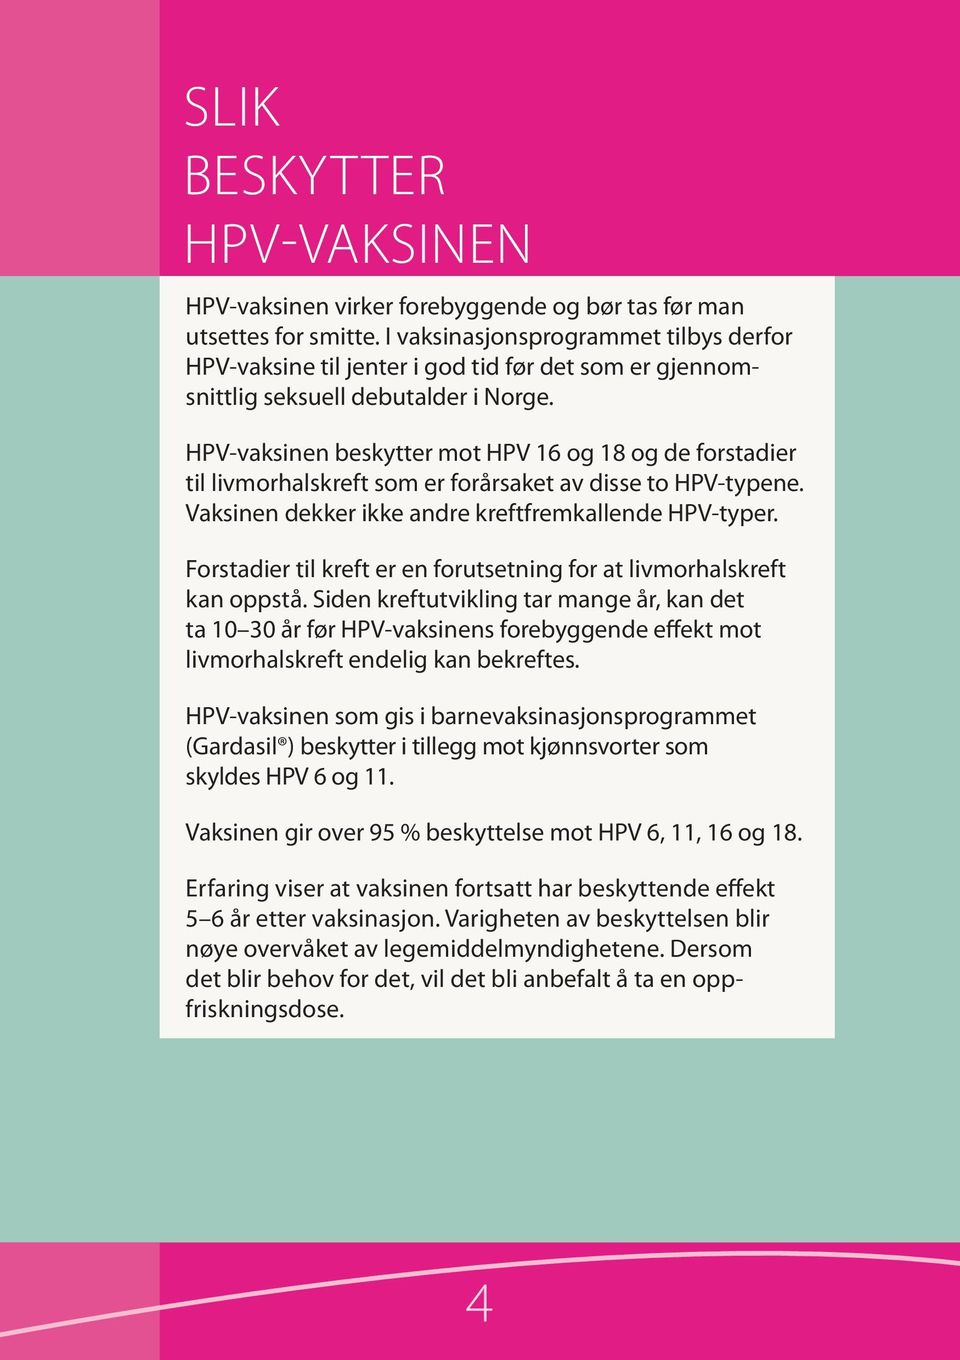 HPV-vaksinen beskytter mot HPV 16 og 18 og de for stadier til livmorhalskreft som er forårsaket av disse to HPV-typene. Vaksinen dekker ikke andre kreftfrem kallende HPV-typer.